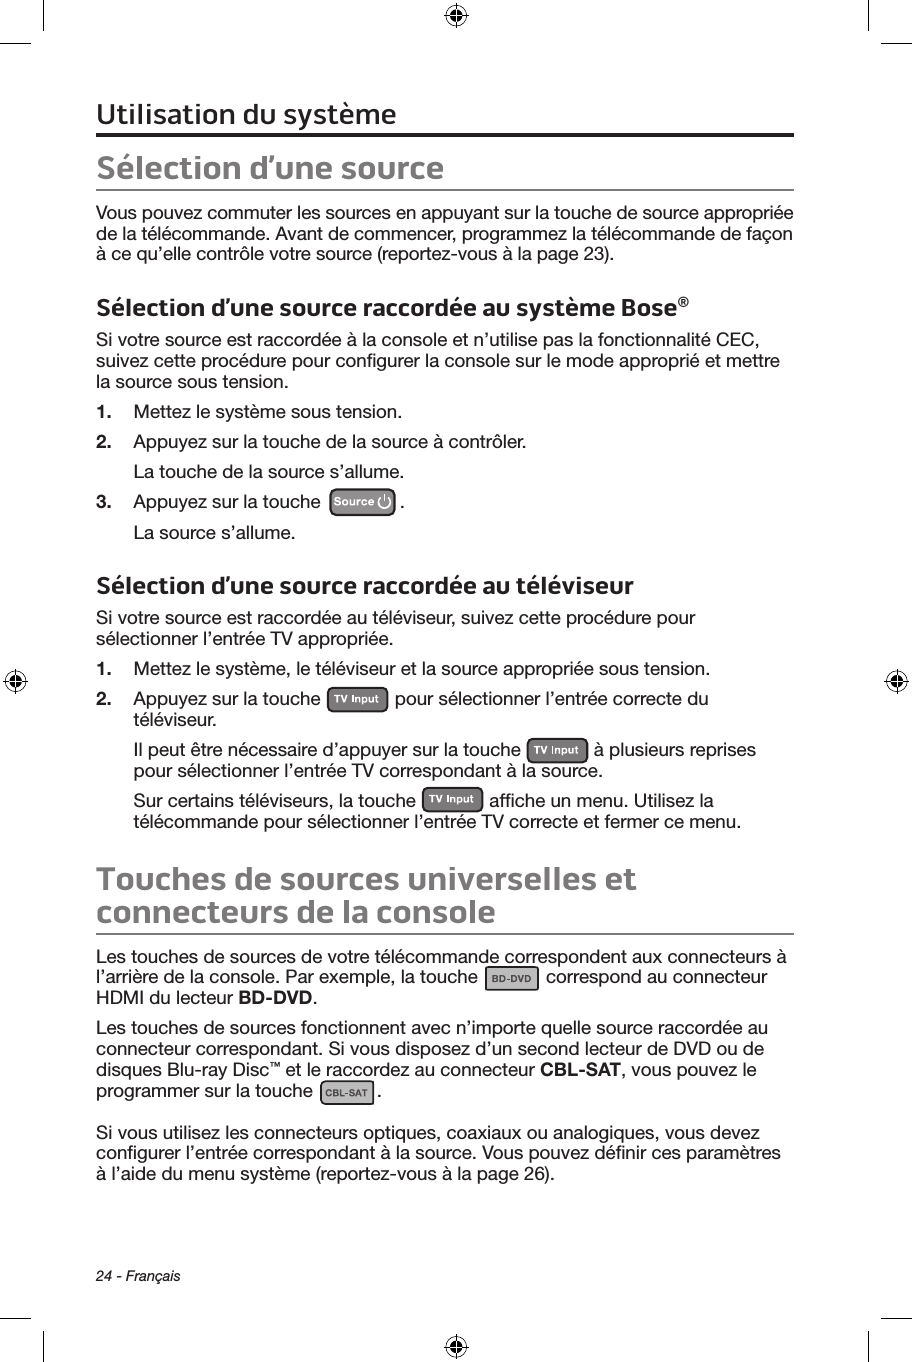 24 - FrançaisSélection d’une sourceVous pouvez commuter les sources en appuyant sur la touche de source appropriée de la télécommande. Avant de commencer, programmez la télécommande de façon à ce qu’elle contrôle votre source (reportez‑vous à la page 23).Sélection d’une source raccordée au système Bose®Si votre source est raccordée à la console et n’utilise pas la fonctionnalité CEC, suivez cette procédure pour conﬁgurer la console sur le mode approprié et mettre la source sous tension.1.  Mettez le système sous tension.2.  Appuyez sur la touche de la source à contrôler.La touche de la source s’allume.3.  Appuyez sur la touche  .La source s’allume.Sélection d’une source raccordée au téléviseurSi votre source est raccordée au téléviseur, suivez cette procédure pour sélectionner l’entrée TV appropriée.1.  Mettez le système, le téléviseur et la source appropriée sous tension.2.  Appuyez sur la touche   pour sélectionner l’entrée correcte du téléviseur. Il peut être nécessaire d’appuyer sur la touche   à plusieurs reprises pour sélectionner l’entrée TV correspondant à la source.Sur certains téléviseurs, la touche   afﬁche un menu. Utilisez la télécommande pour sélectionner l’entrée TV correcte et fermer ce menu.Touches de sources universelles et  connecteurs de la consoleLes touches de sources de votre télécommande correspondent aux connecteurs à  l’arrière de la console. Par exemple, la touche   correspond au connecteur  HDMI du lecteur BD-DVD.Les touches de sources fonctionnent avec n’importe quelle source raccordée au connecteur correspondant. Si vous disposez d’un second lecteur de DVD ou de disques Blu‑ray Disc™ et le raccordez au connecteur CBL-SAT, vous pouvez le programmer sur la touche  . Si vous utilisez les connecteurs optiques, coaxiaux ou analogiques, vous devez conﬁgurer l’entrée correspondant à la source. Vous pouvez déﬁnir ces paramètres à l’aide du menu système (reportez‑vous à la page 26).Utilisation du système